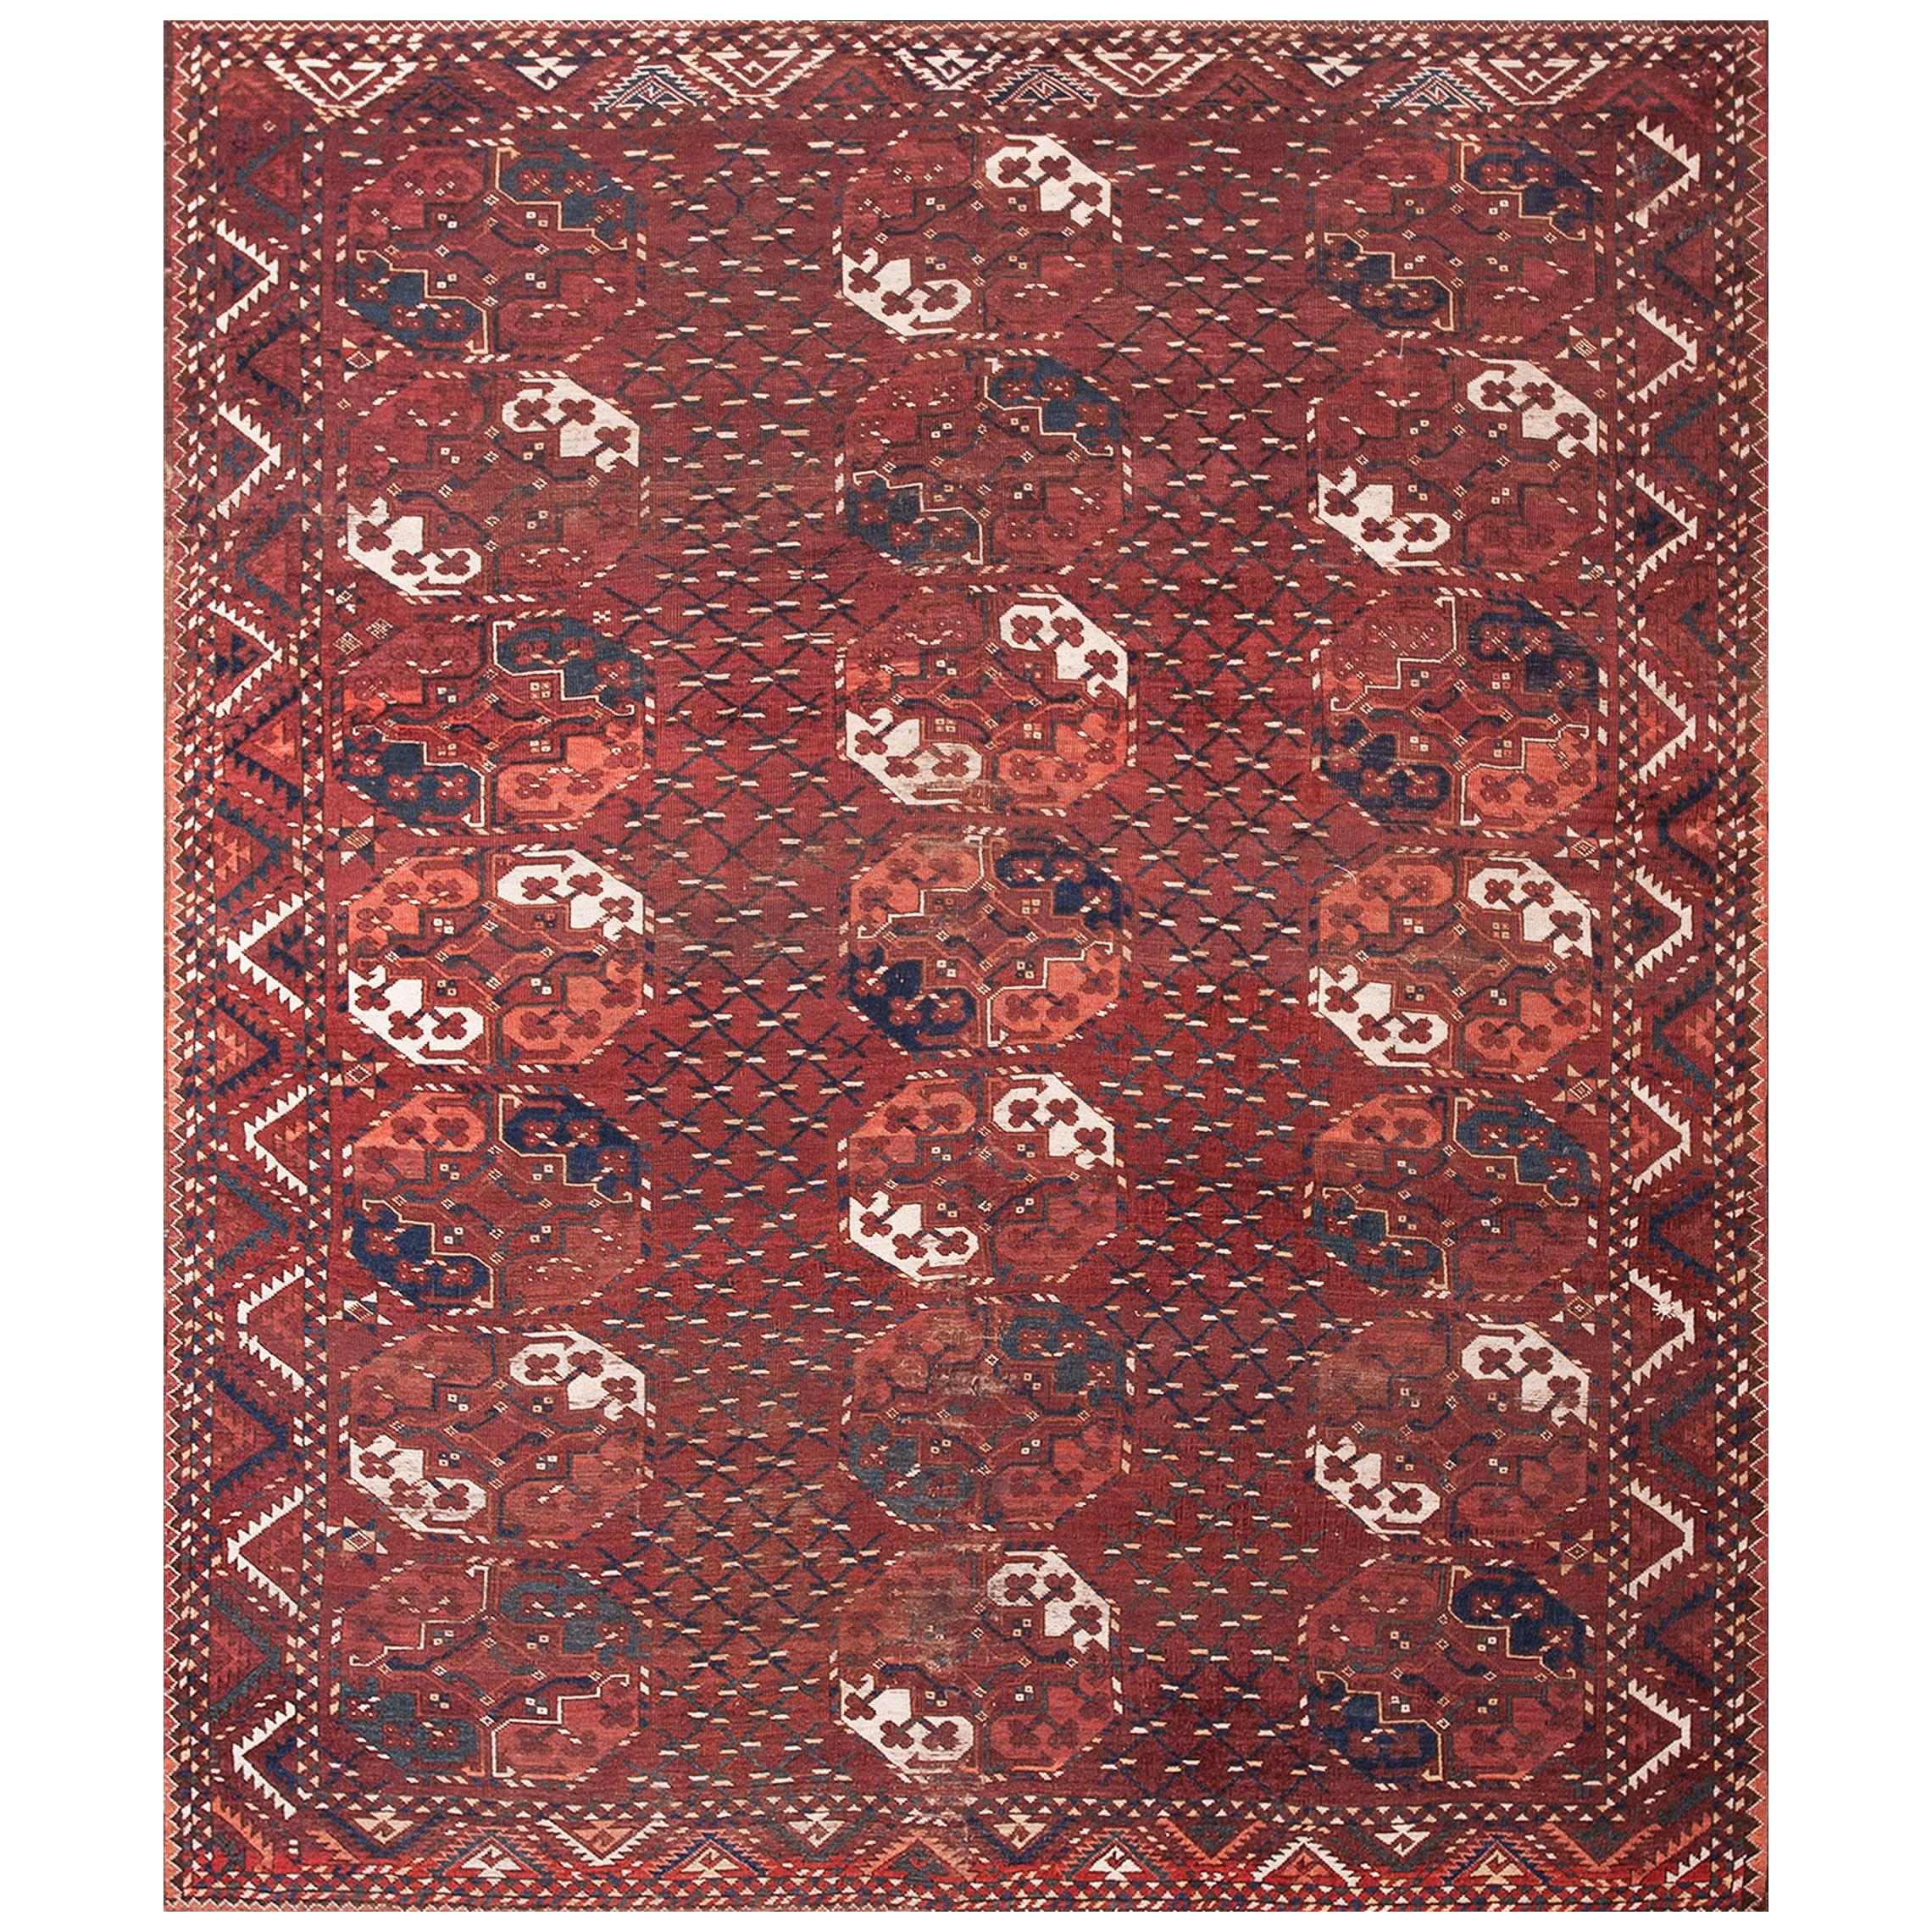 Zentralasiatischer Ersari aus der Mitte des 19. Jahrhunderts – Beshir Hauptteppich (6'6" x 8'-198 x 244)